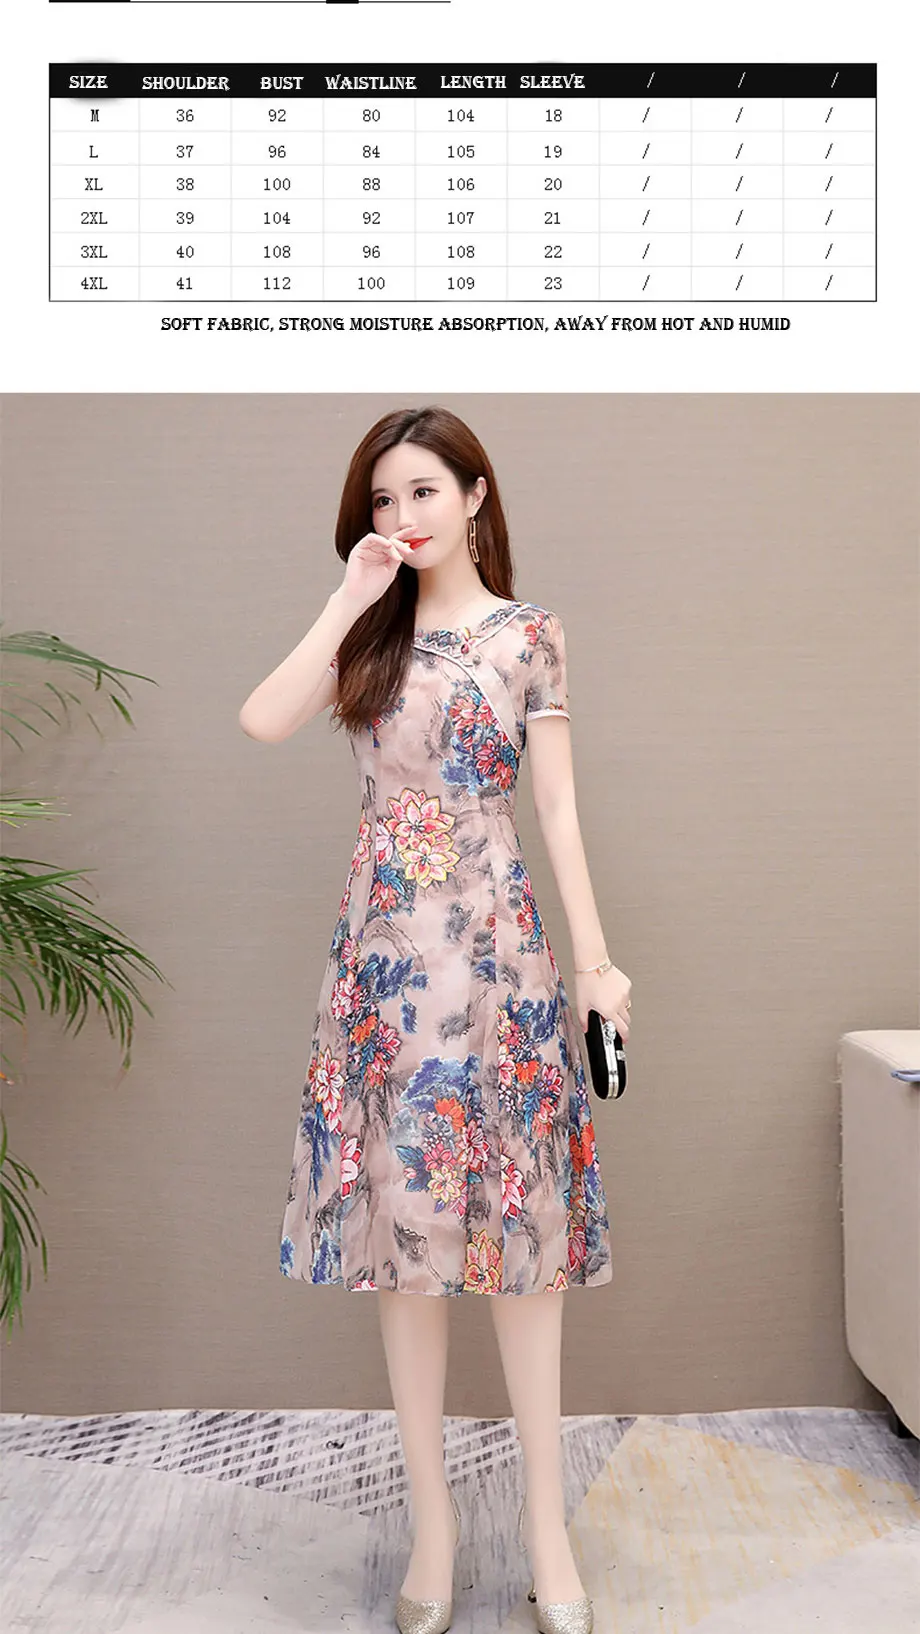 Летнее платье lmpasted Cheongsam PlusSize платье Элегантное Цветочное платье шифоновые платья для женщин похудение возраст платья